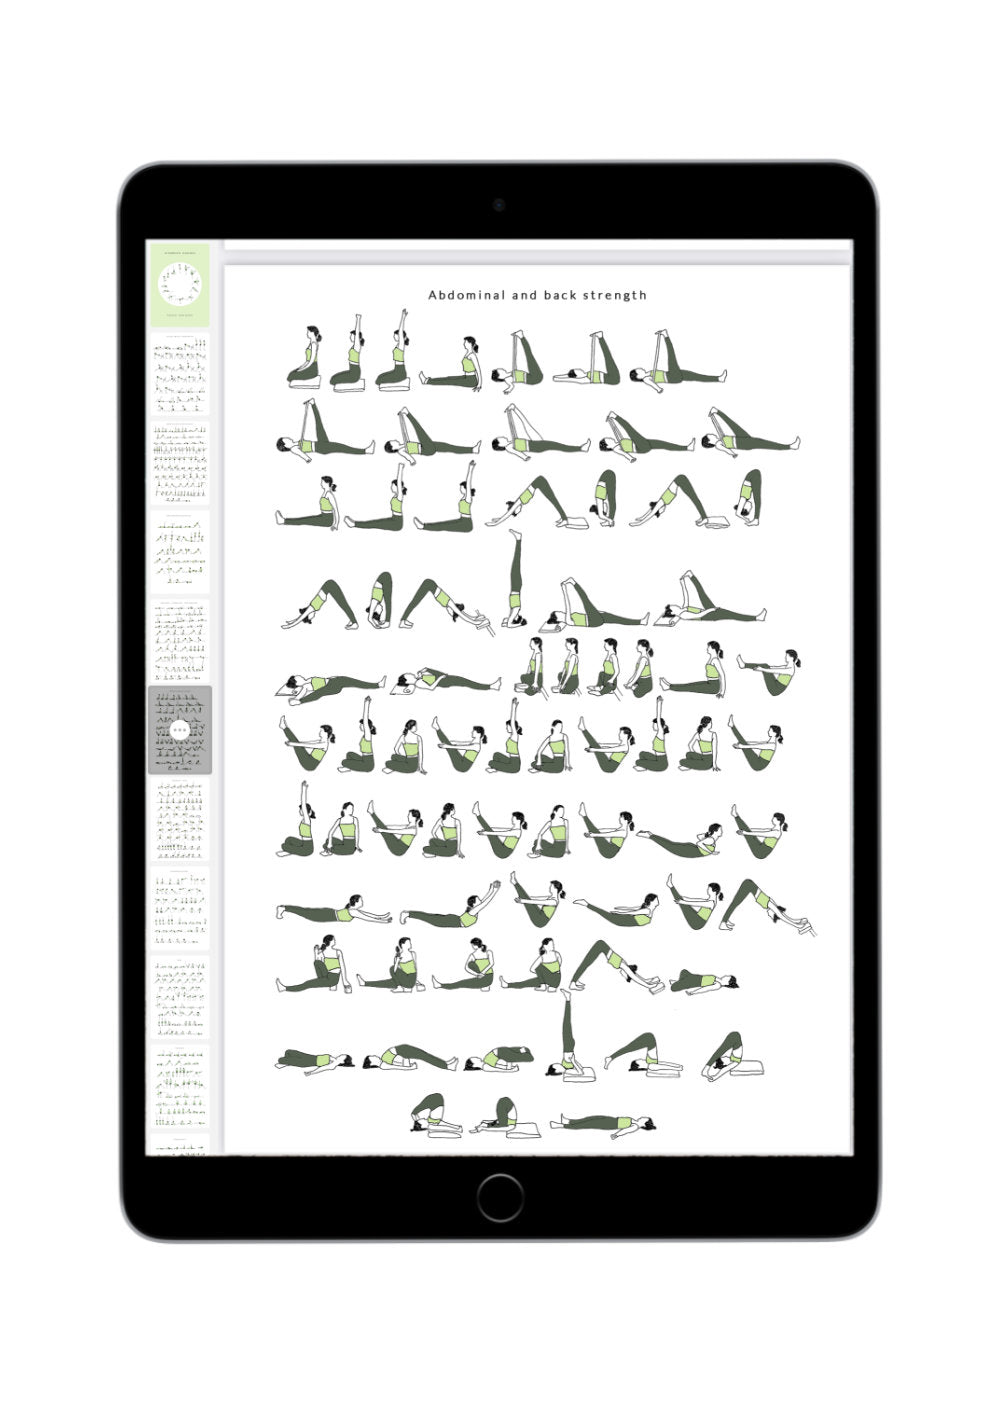 Svejar Yoga Illustrations - Advanced Sequences I - Mockup iPad